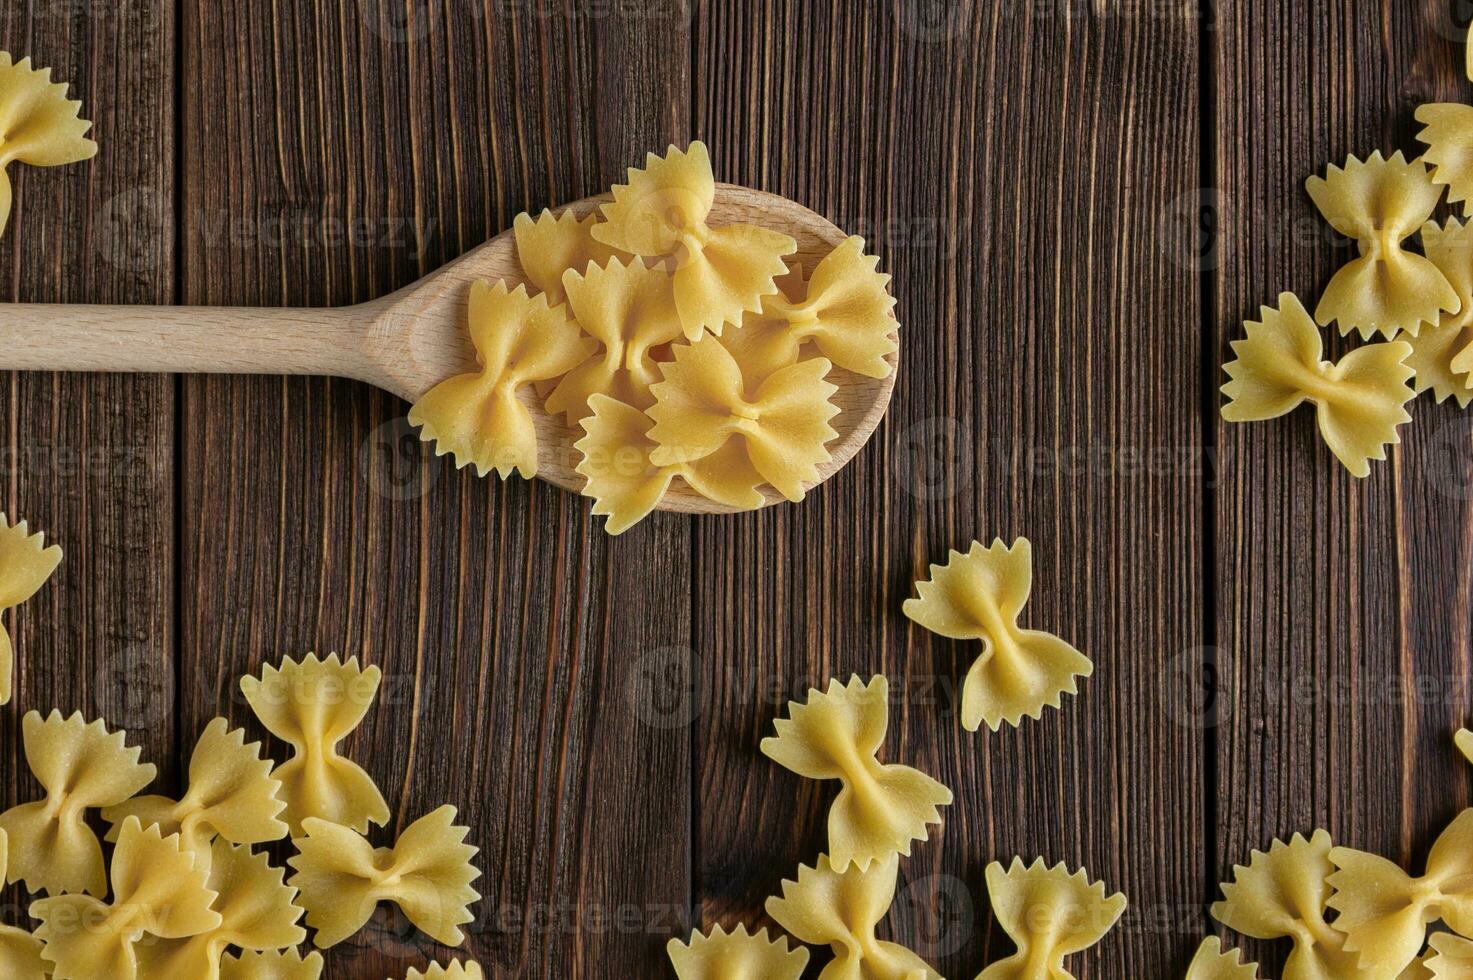 Raw pasta farfalle on spoon on wooden background. photo